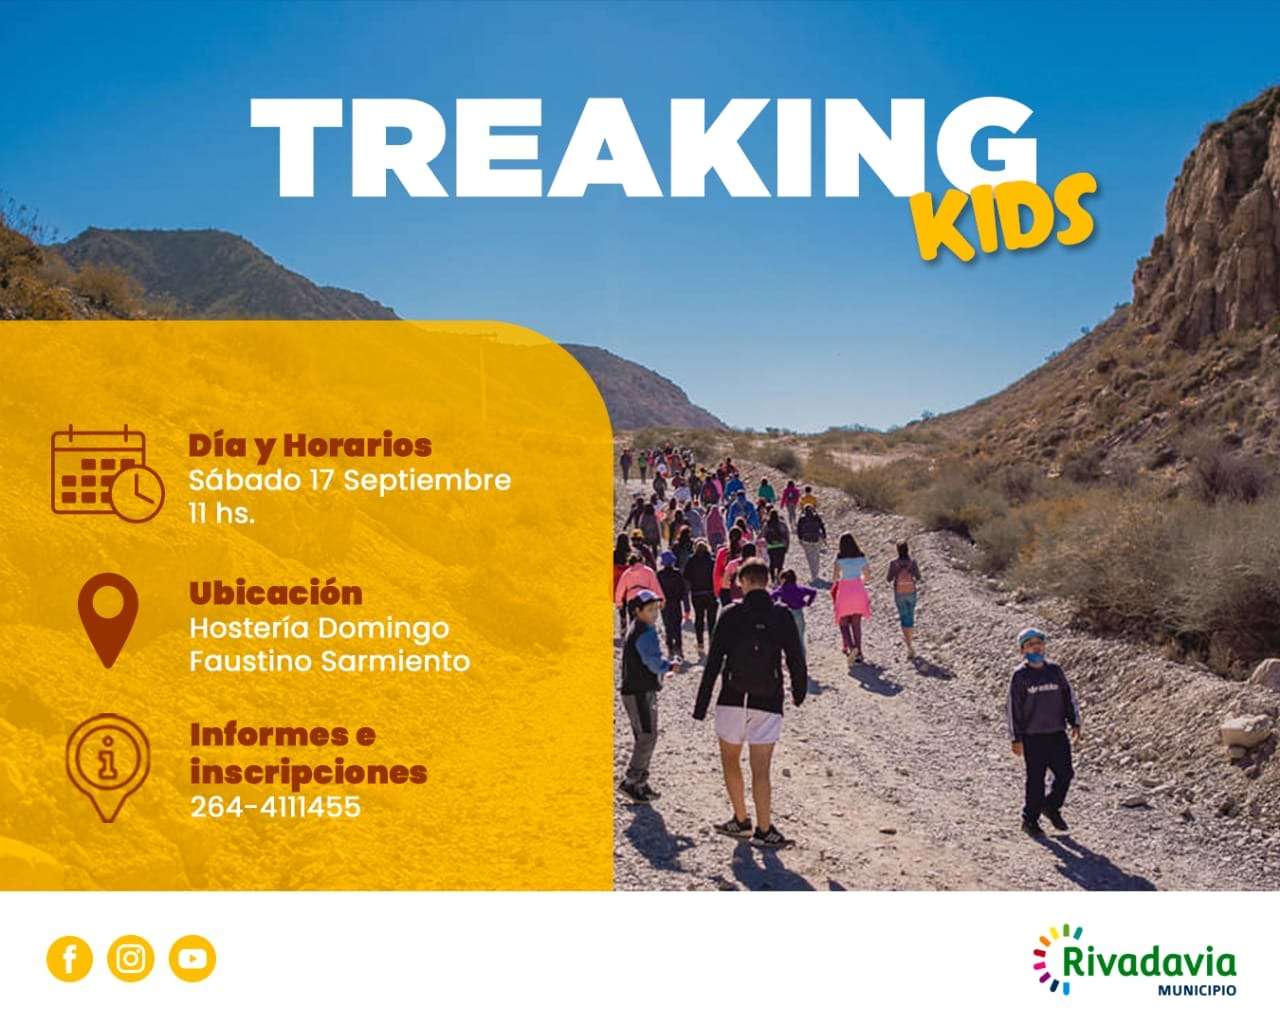 Rivadavia organizará una jornada de trekking para los más pequeños